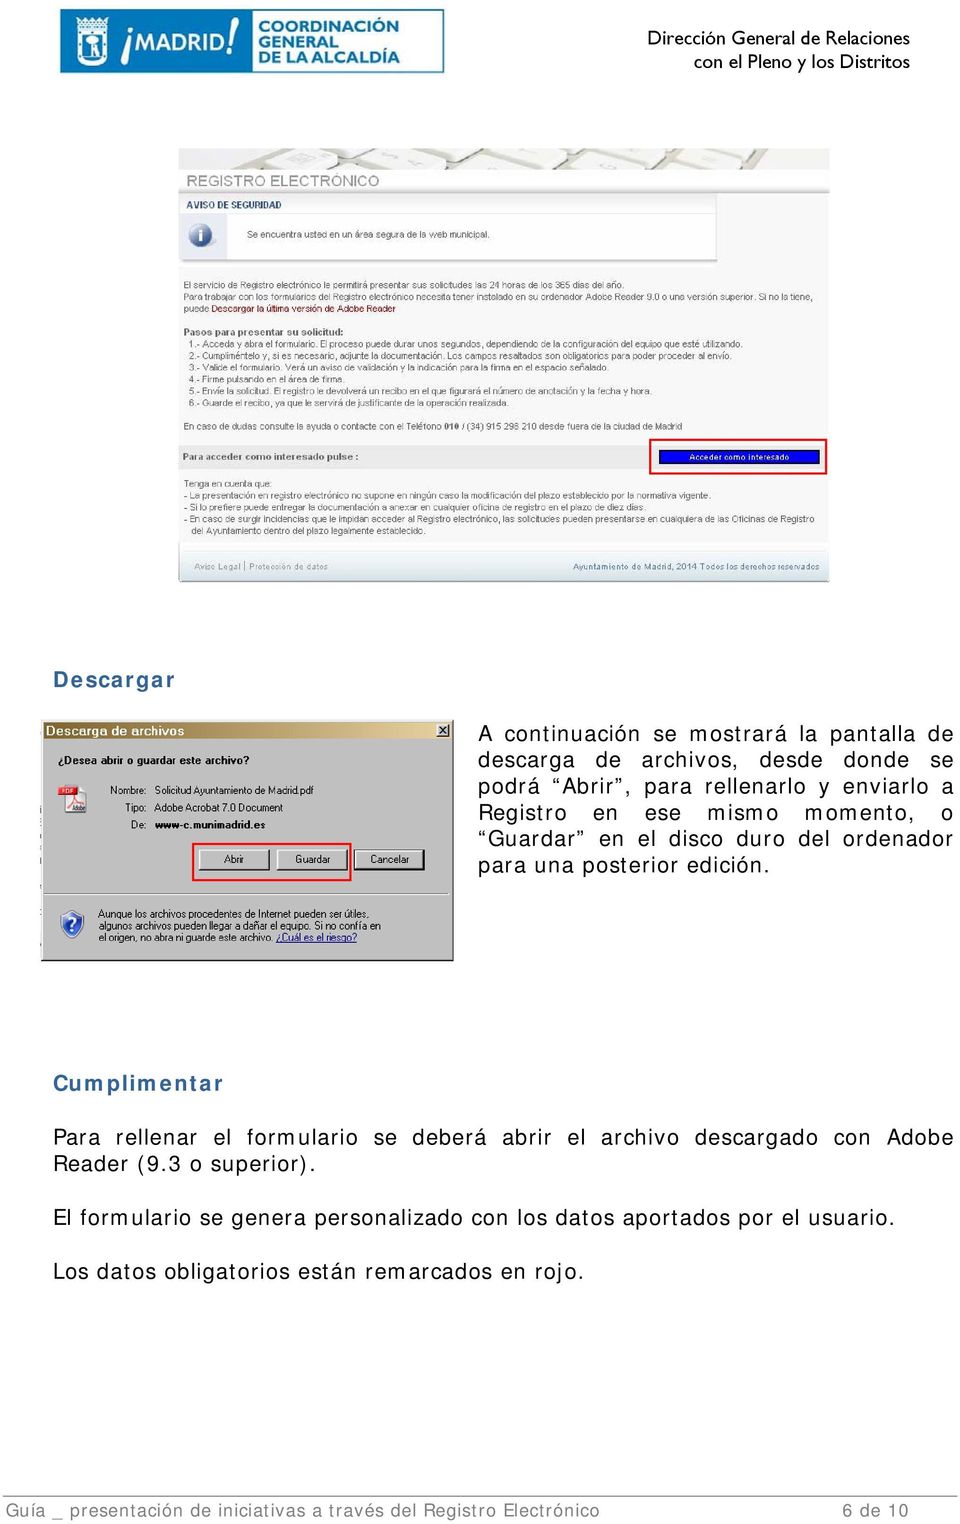 Cumplimentar Para rellenar el formulario se deberá abrir el archivo descargado con Adobe Reader (9.3 o superior).